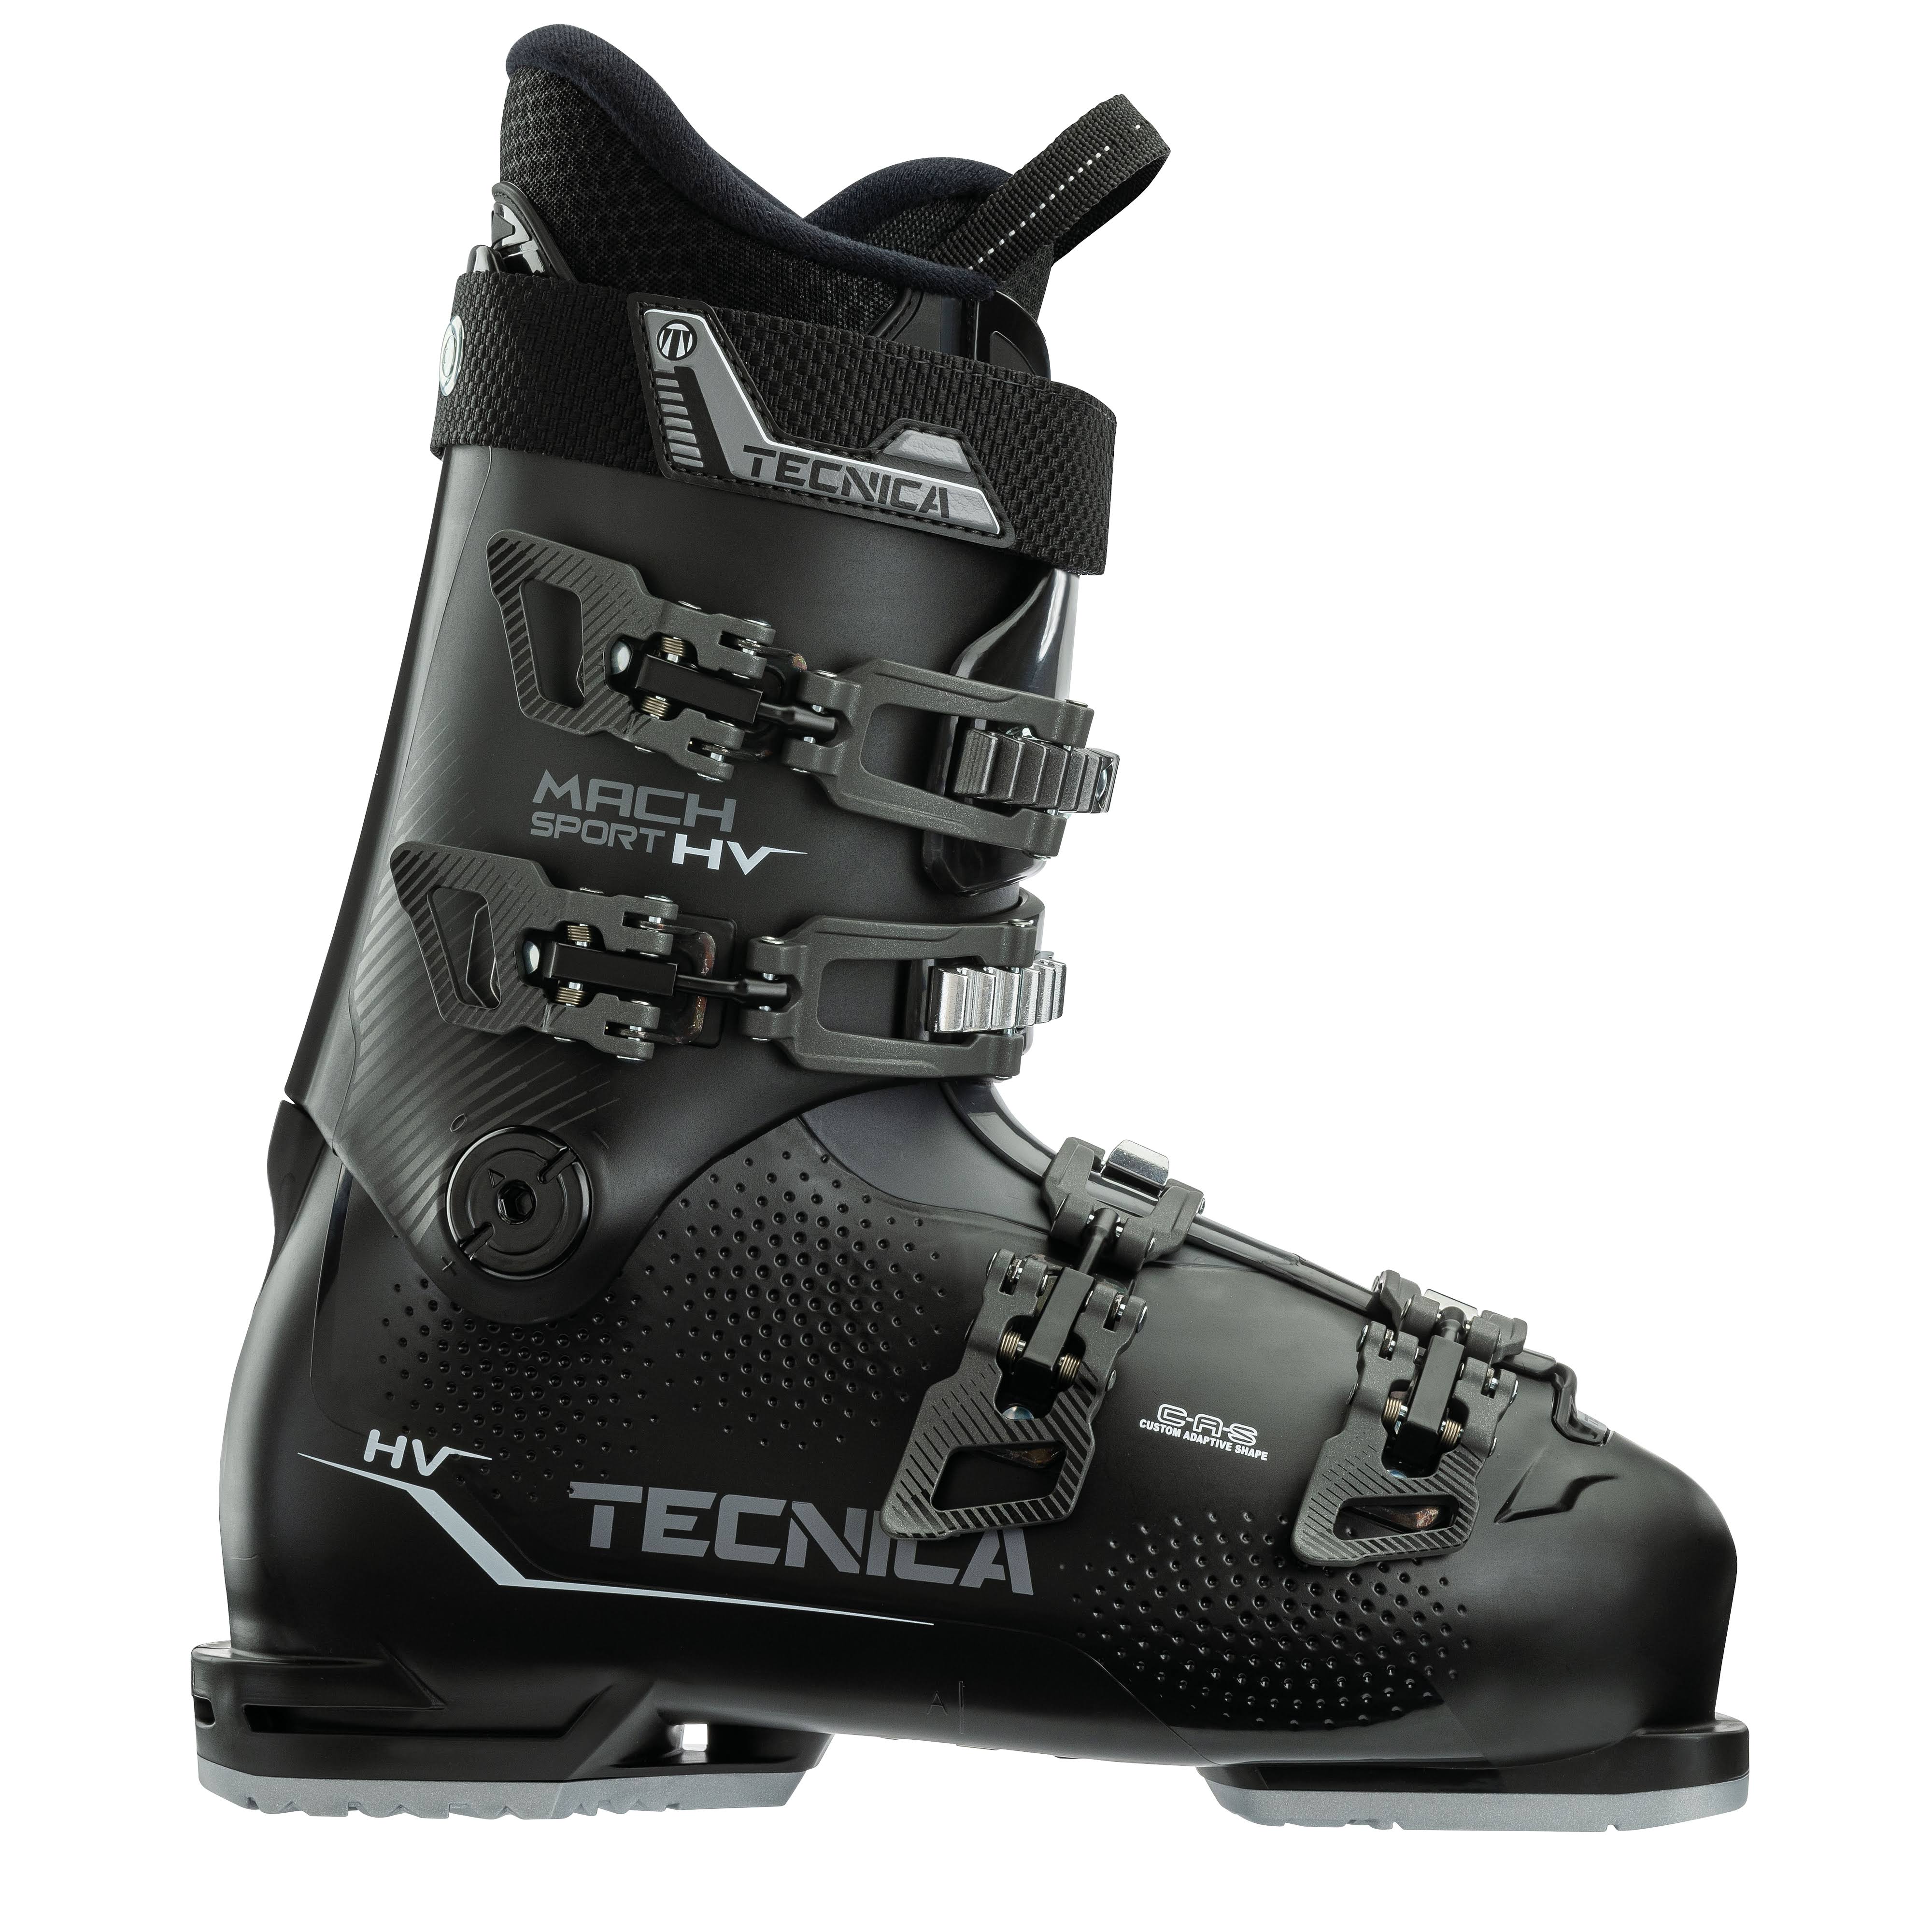 Tecnica Ski Boots Mach Sport HV 70 Men - No Color - 24.5